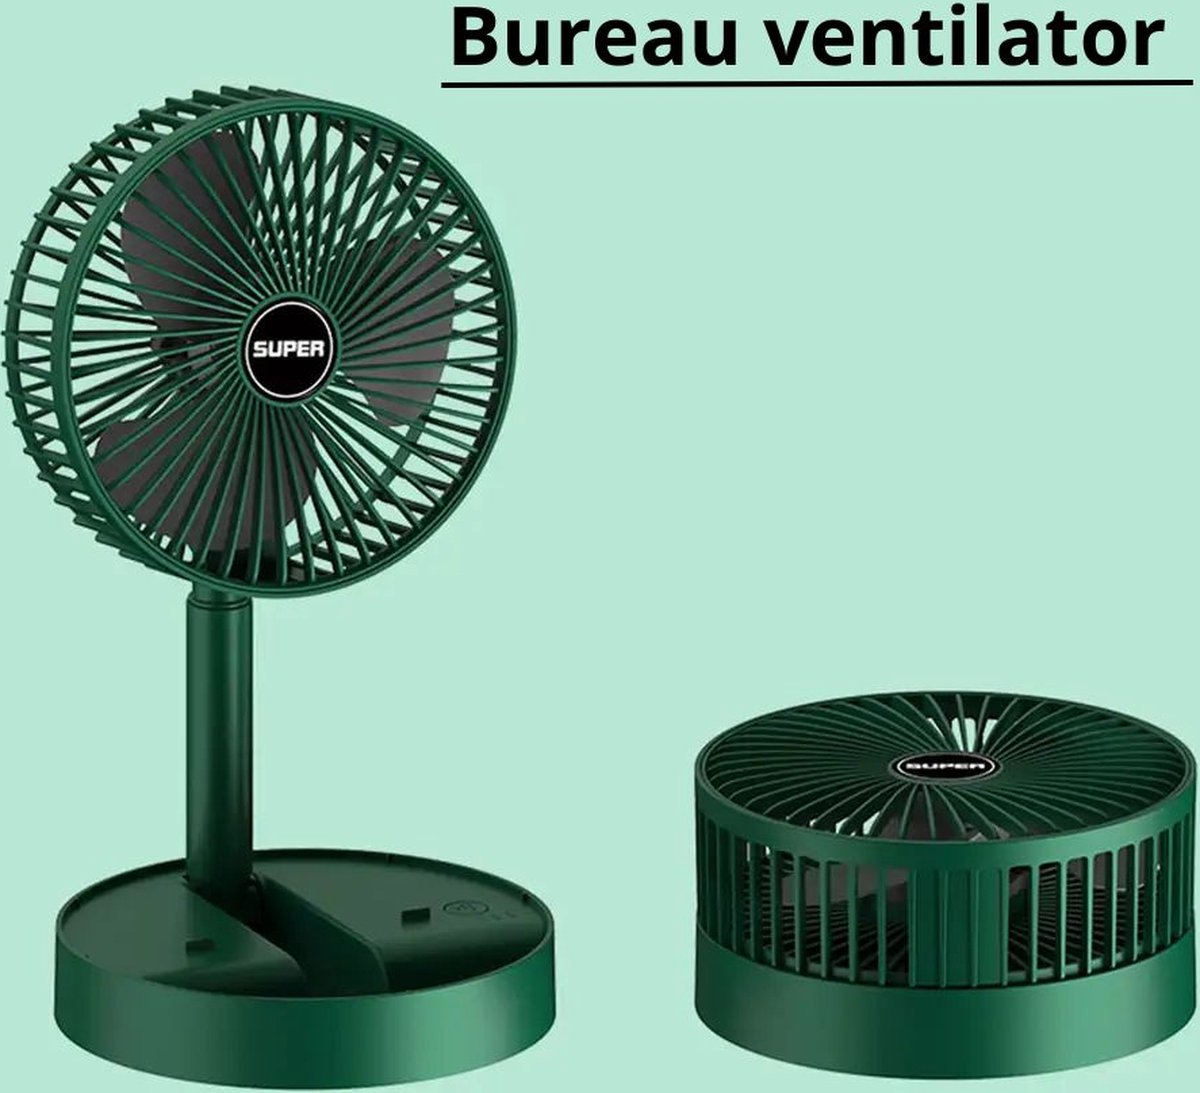 Bureau ventilator